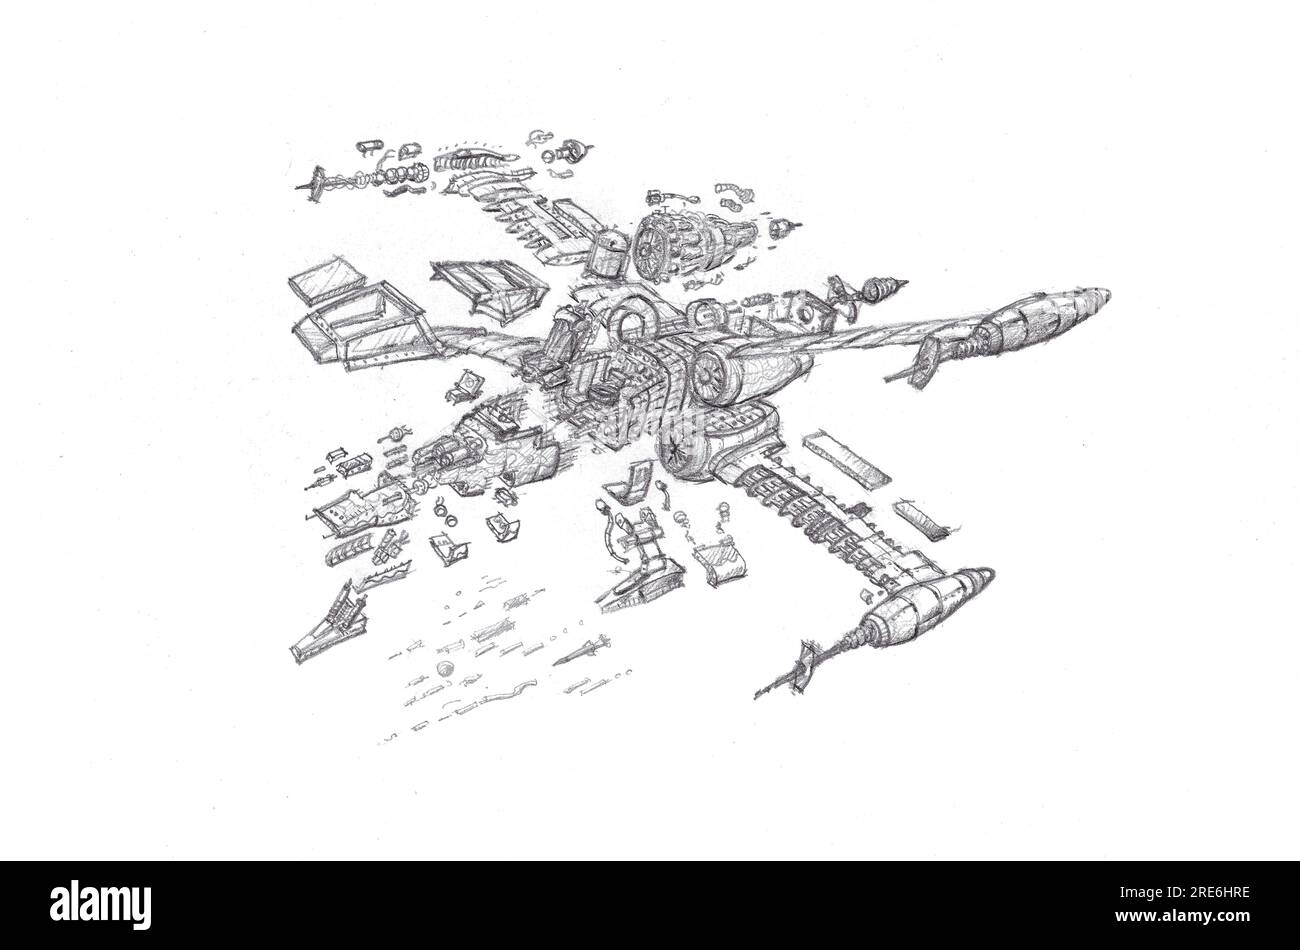 Raumschiff-Schnittbild mit Explosion von Flügel-Spa, Schutzdach, vier Triebwerken, Schleudersitz, Laserpistole, Cockpit und mehr. Zeichnen mit Bleistift. Stockfoto